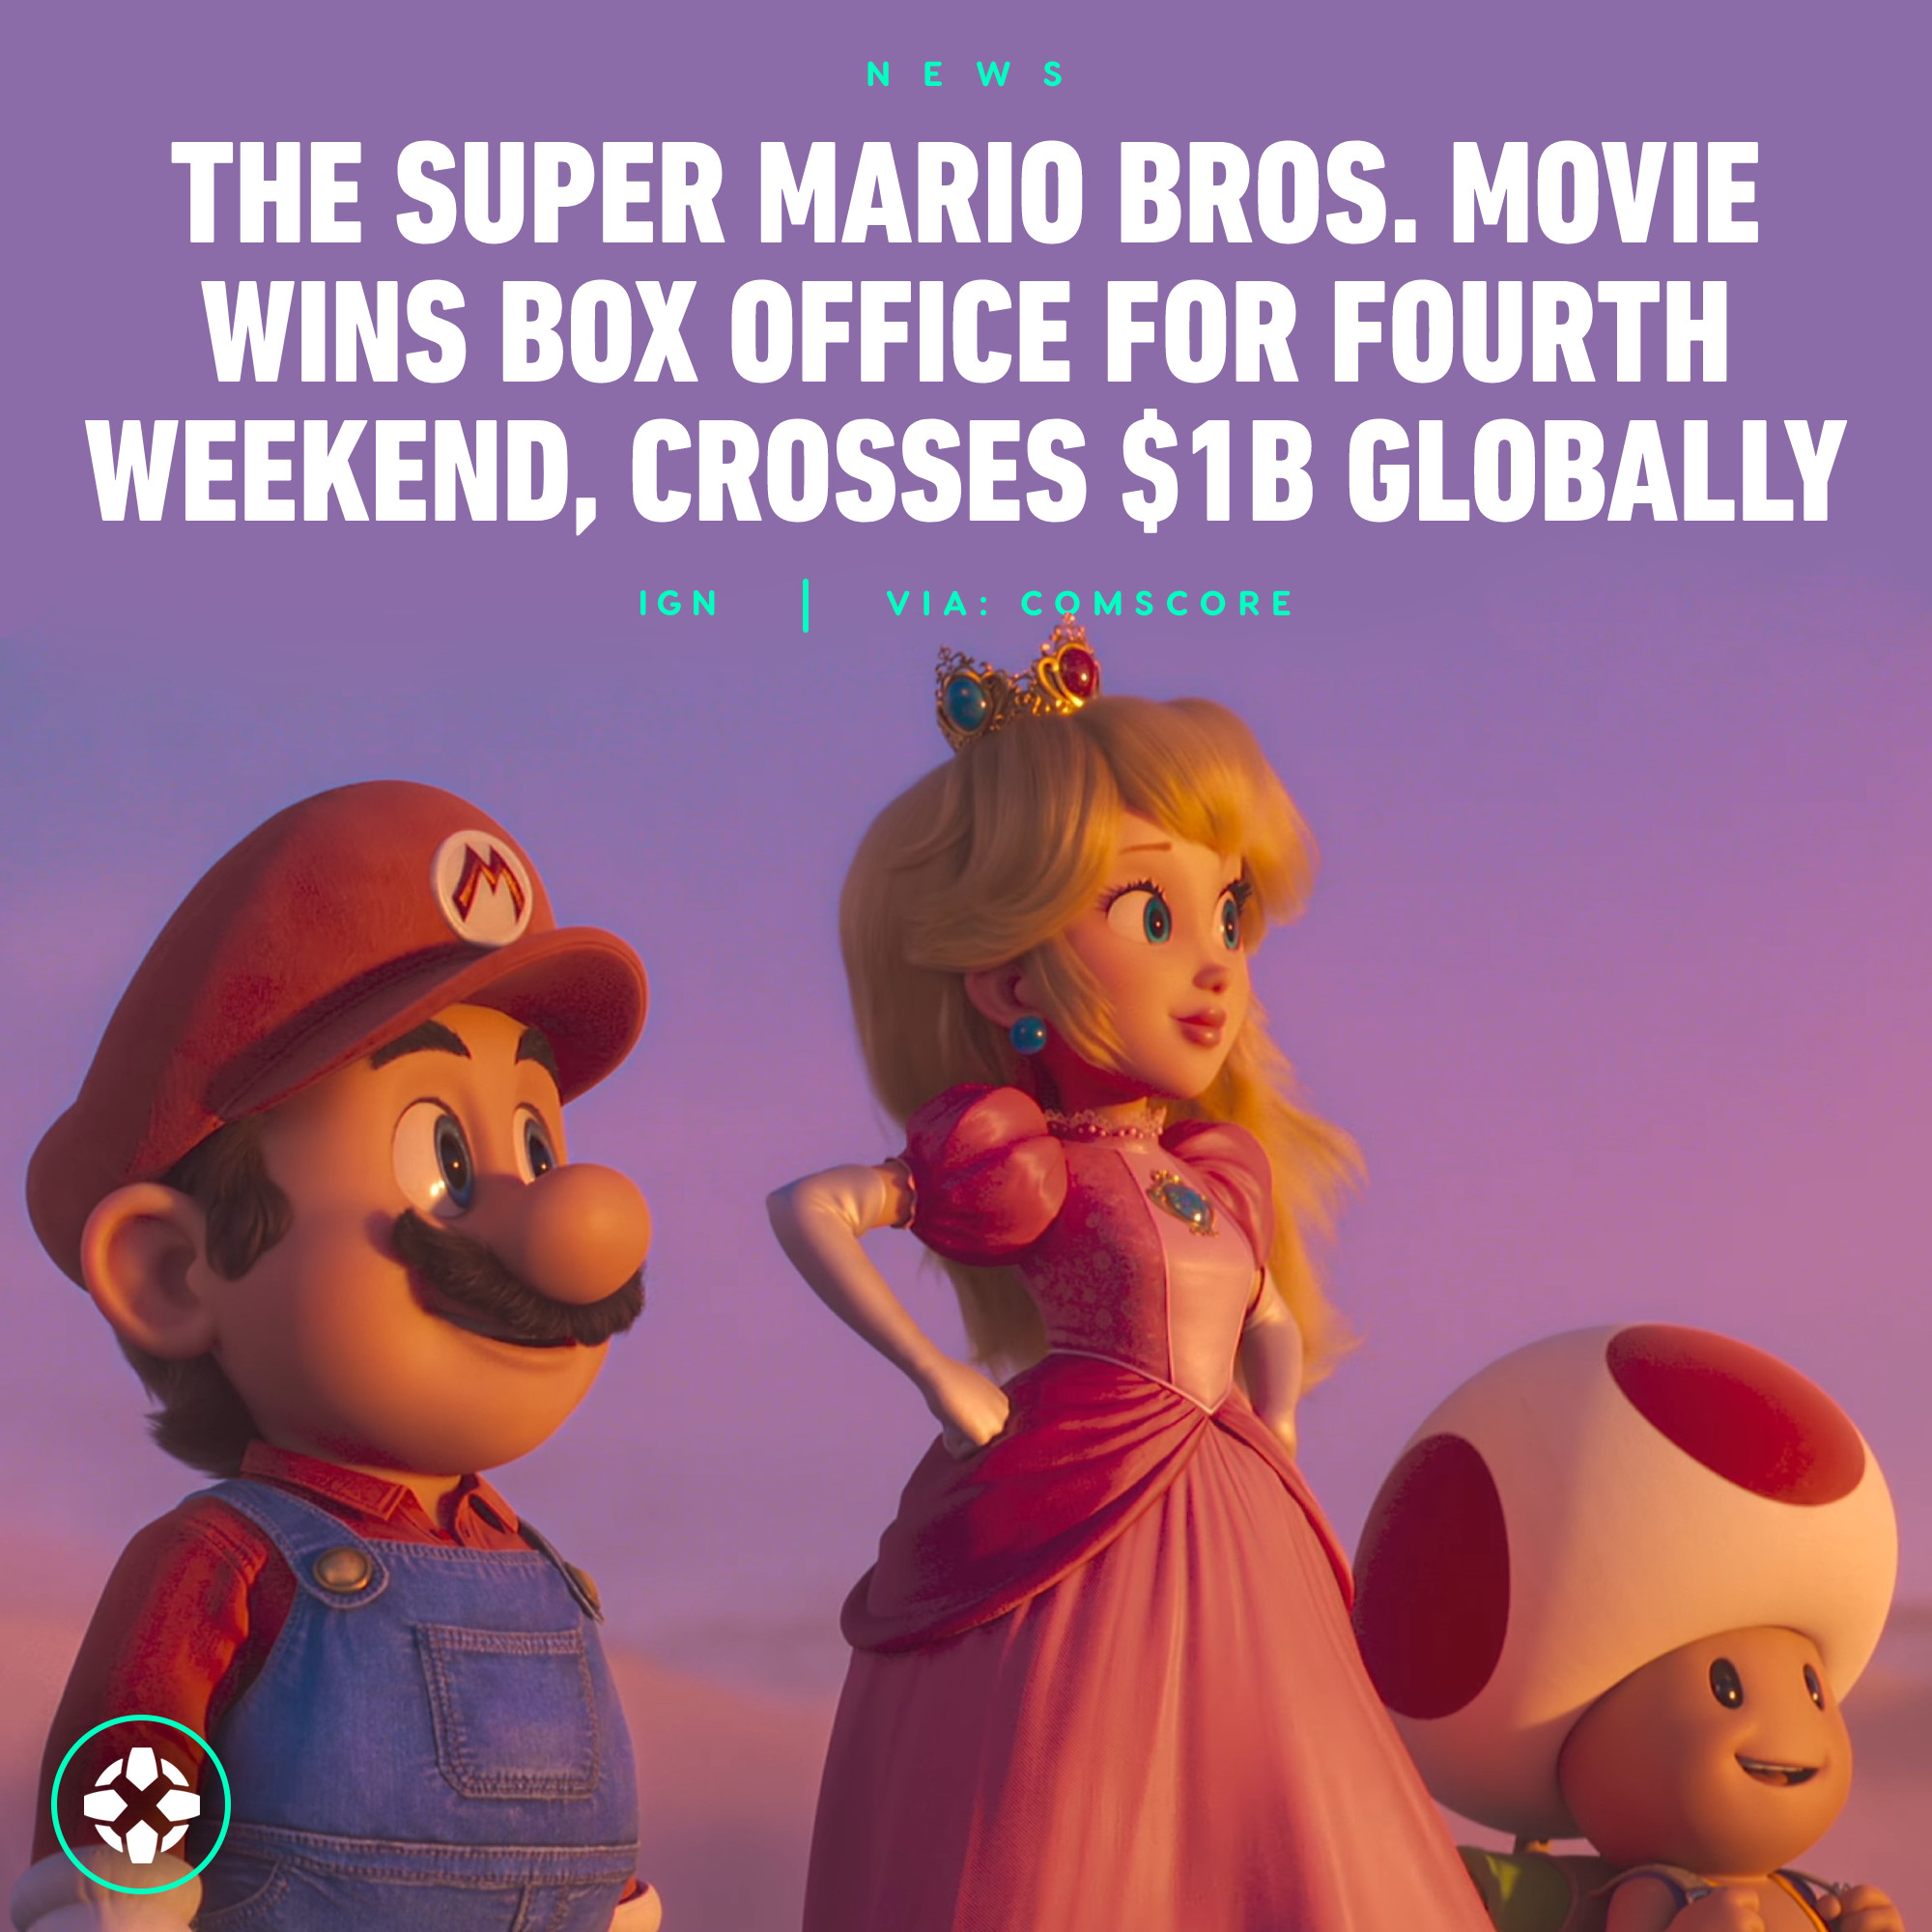 The Super Mario Bros. Movie - IGN